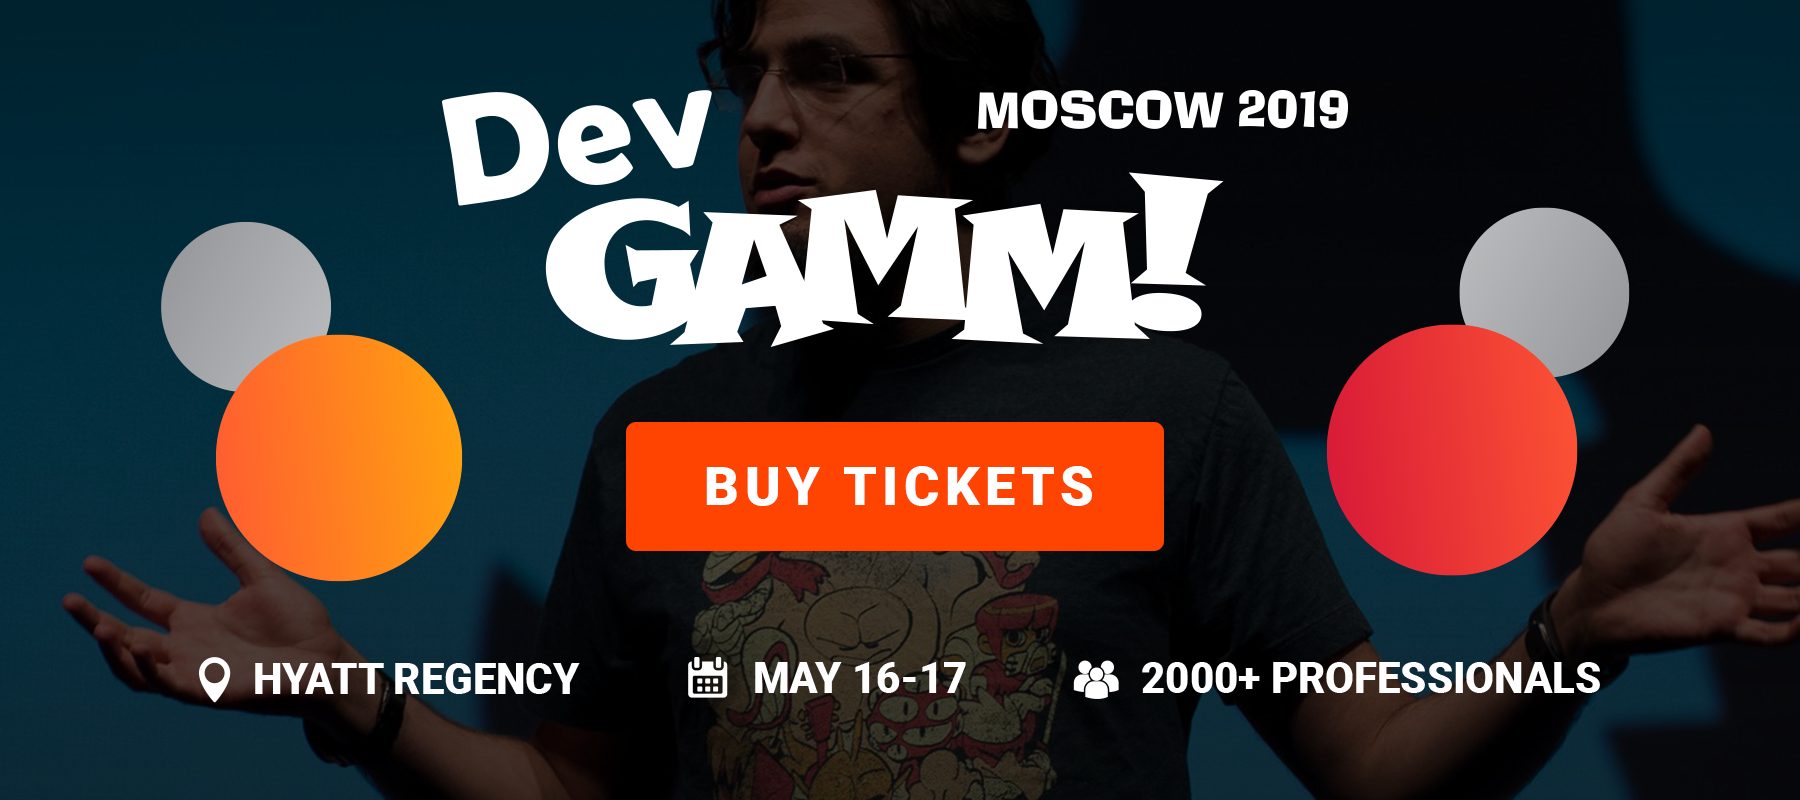 16-17 мая состоится конференция разработчиков игр DevGAMM